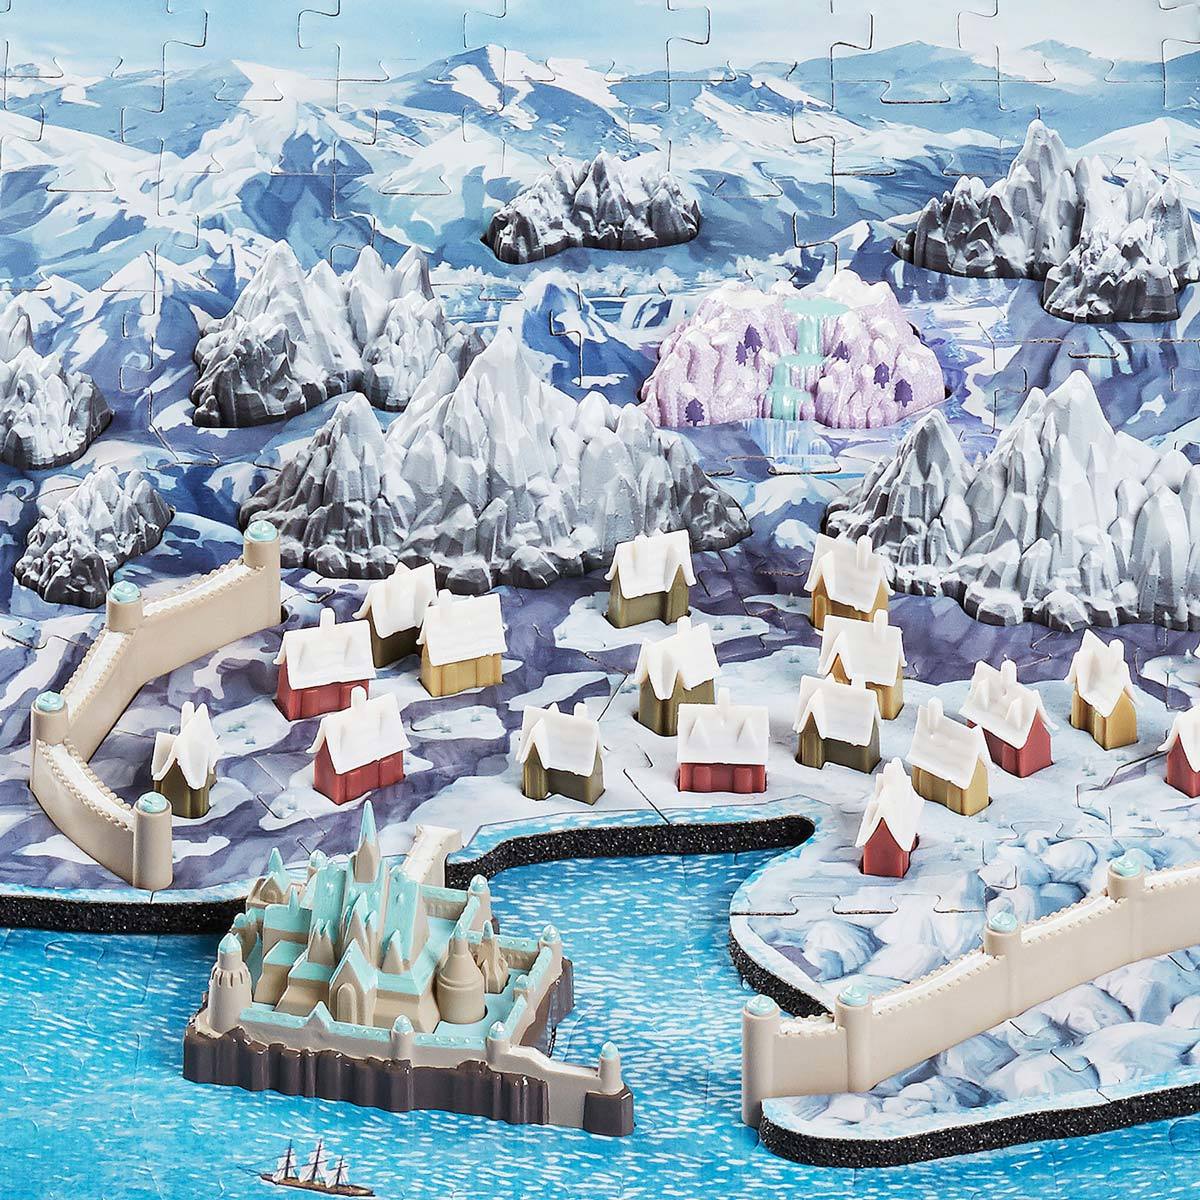 4D CITYSCAPES - PUZZLE ASSORTMENT Frozen